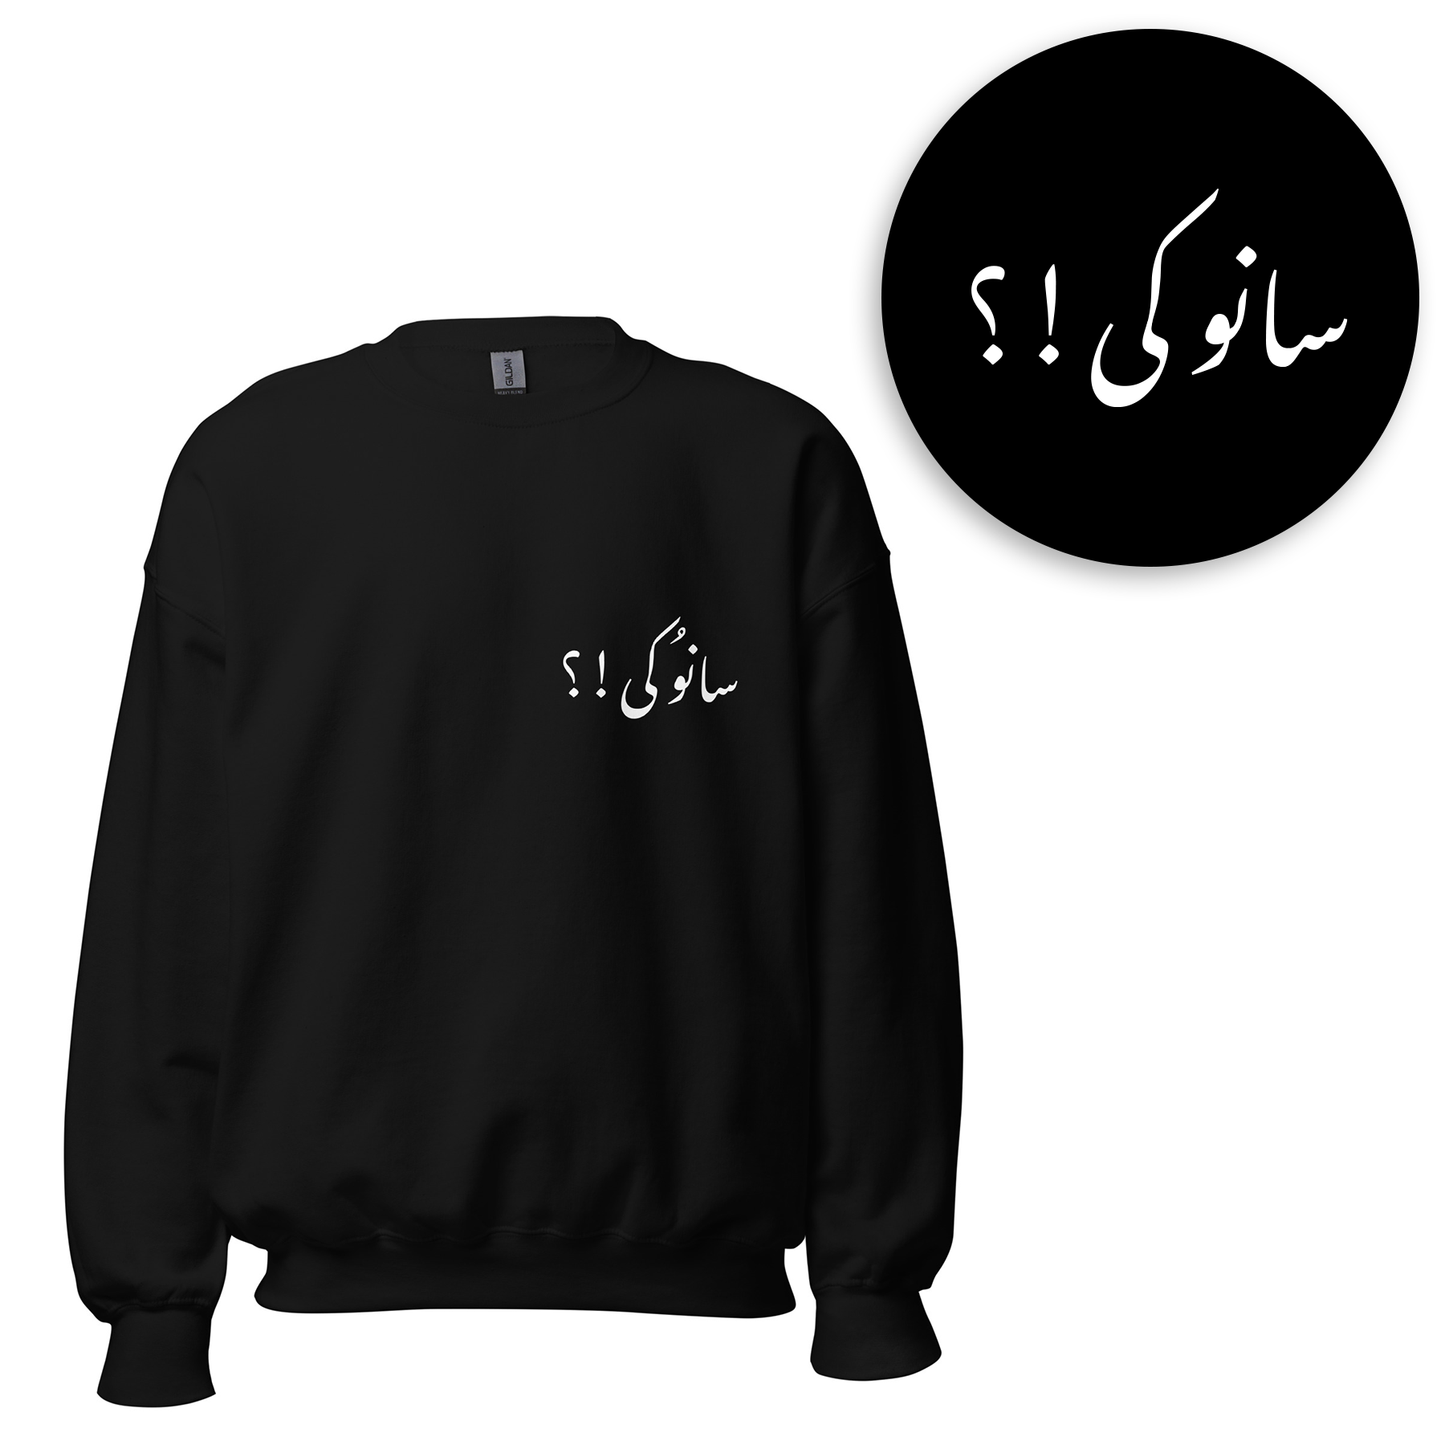 Urdu Words Sweatshirts